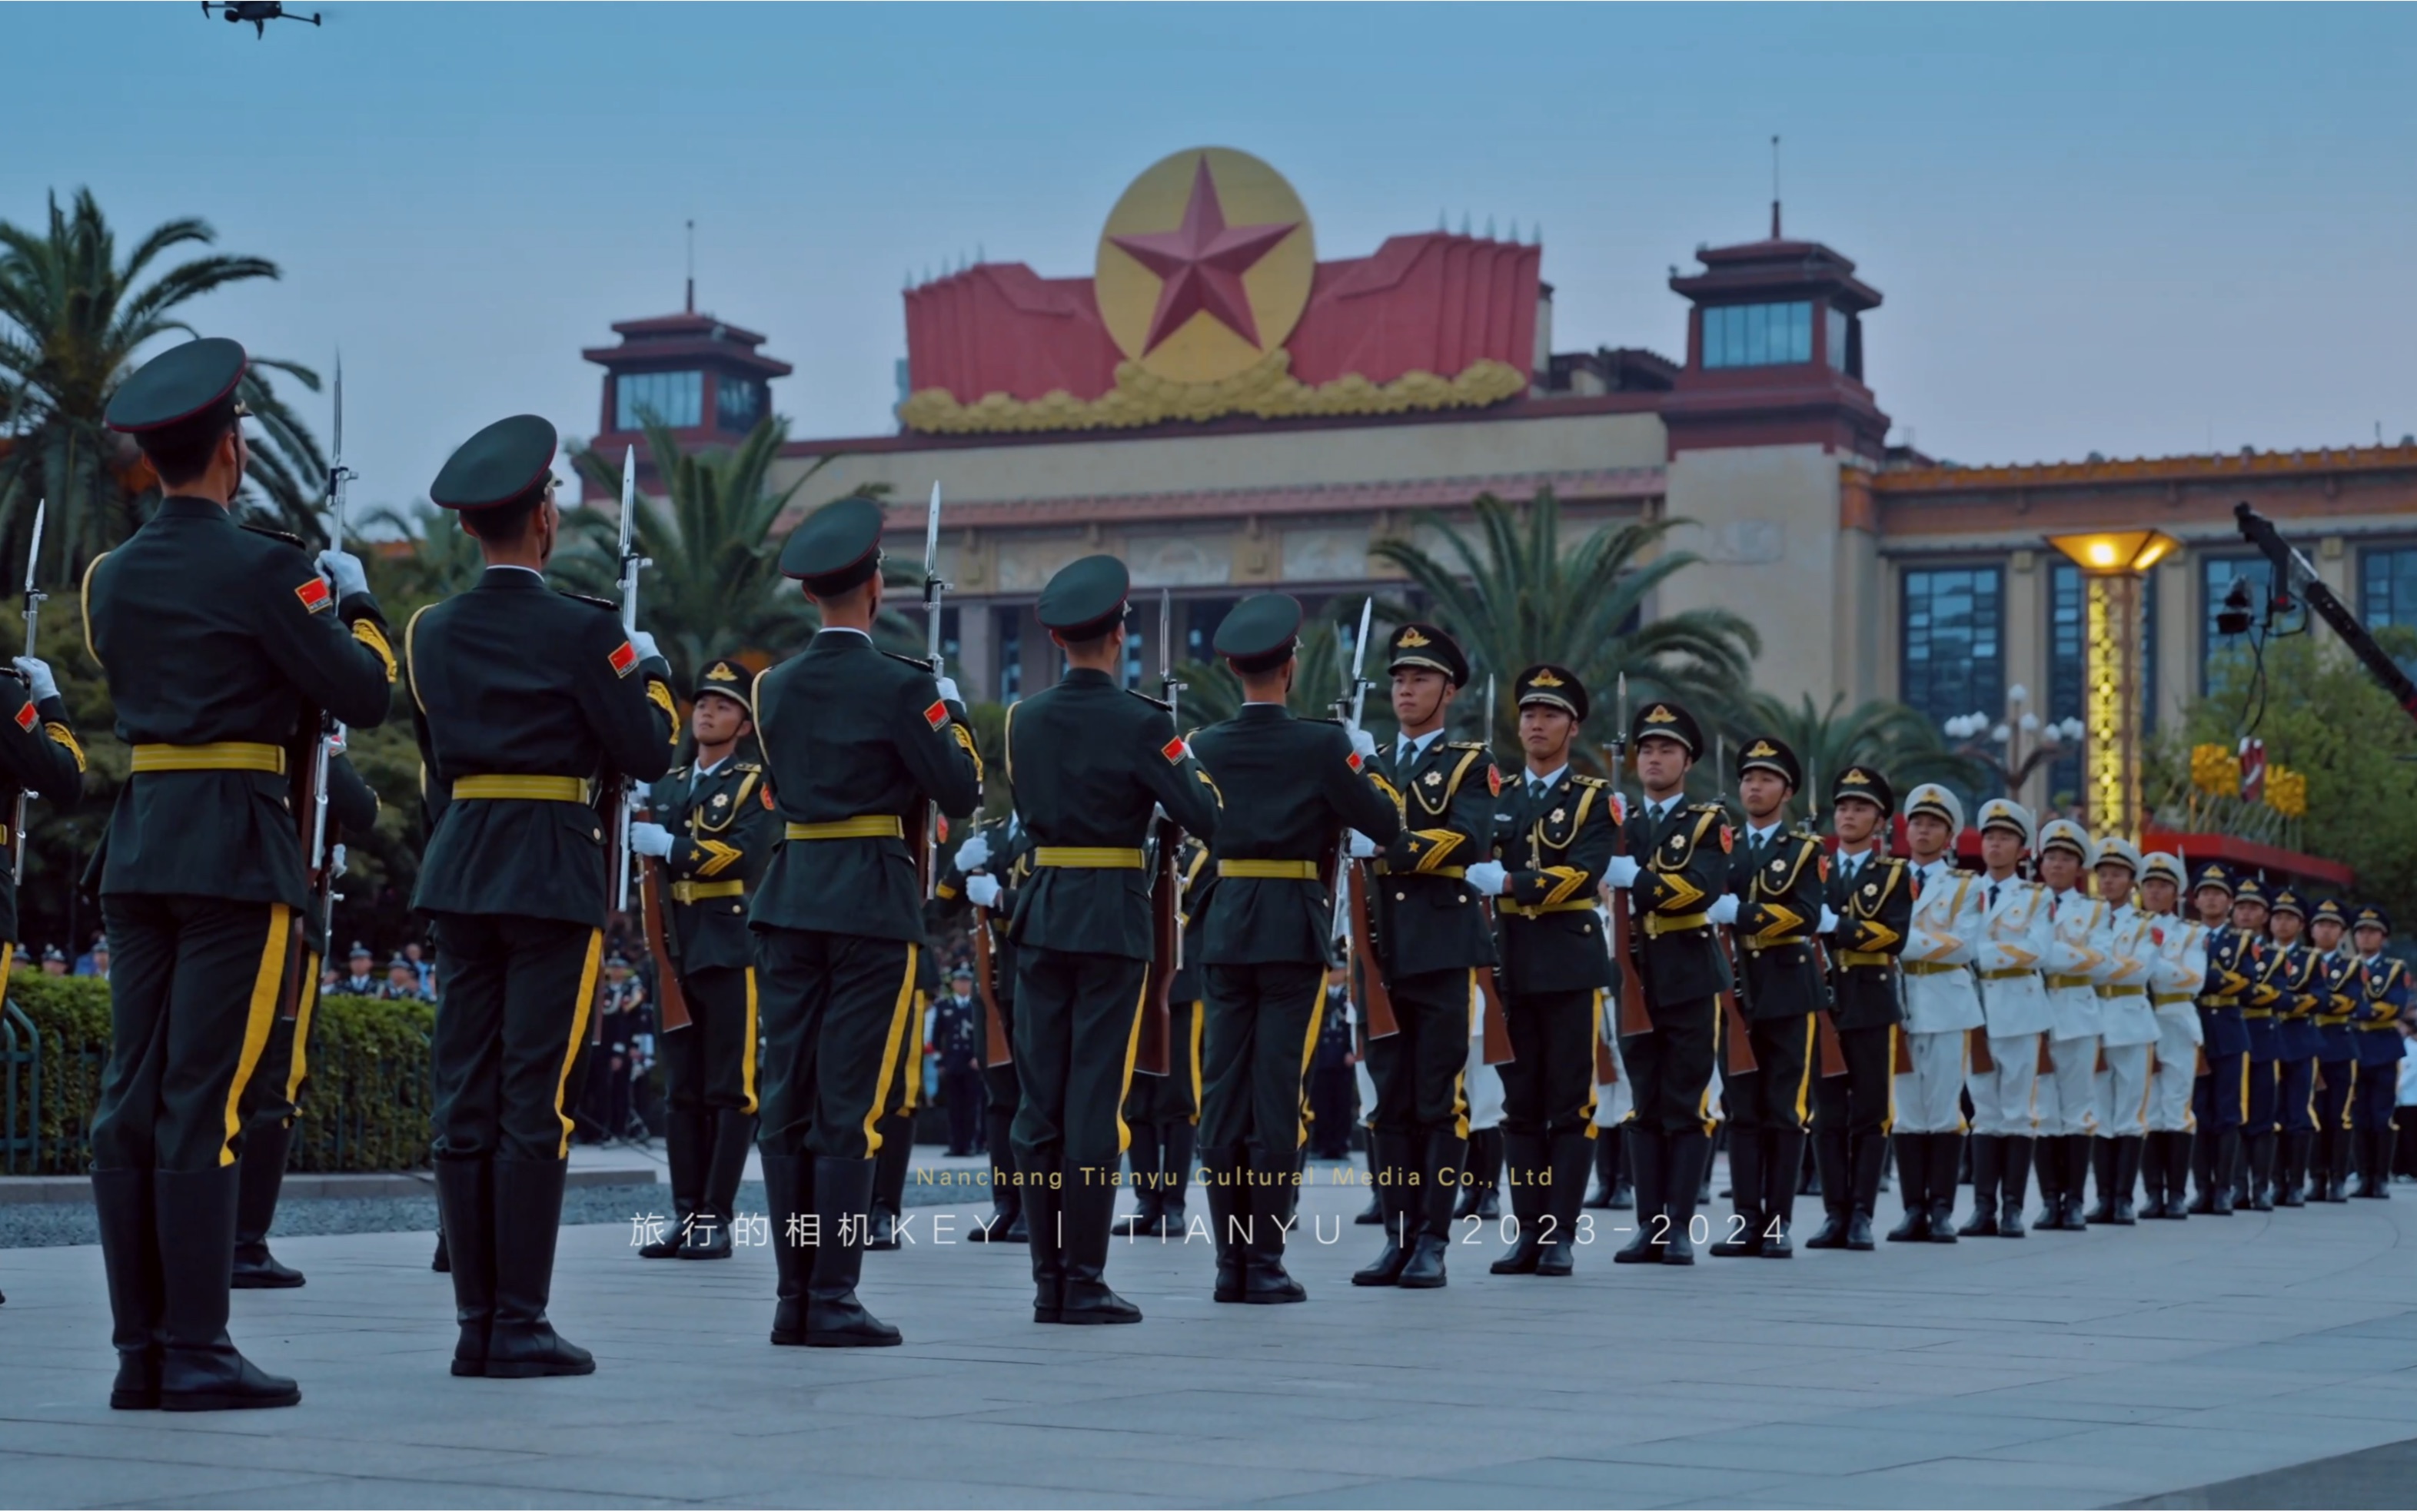 南昌是全国唯二的三军仪仗队举行升国旗仪式的城市，另一座城市是北京